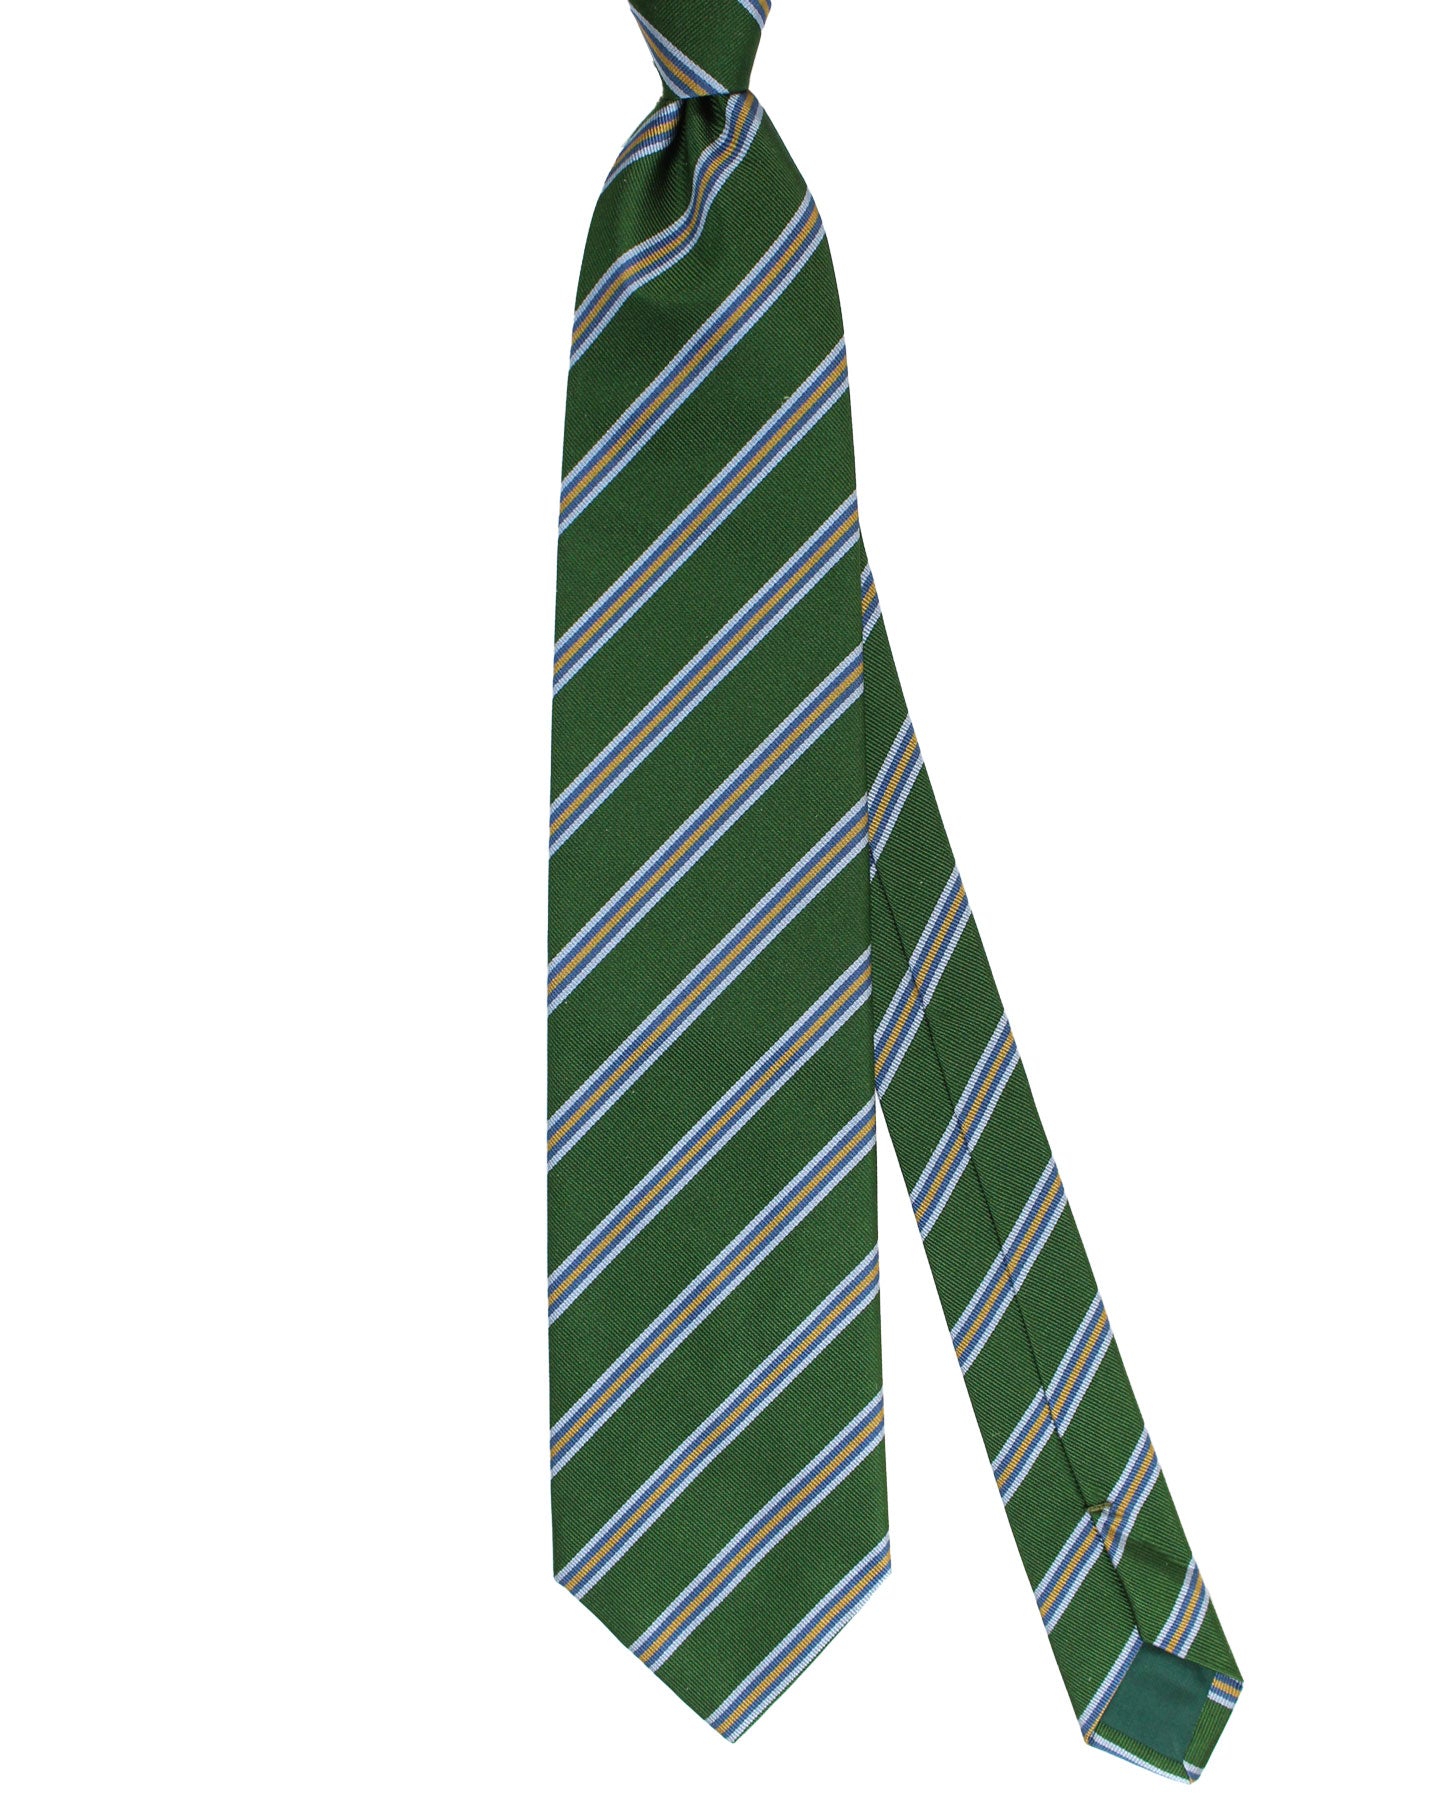 E. Marinella Tie Green Blue Stripes Design